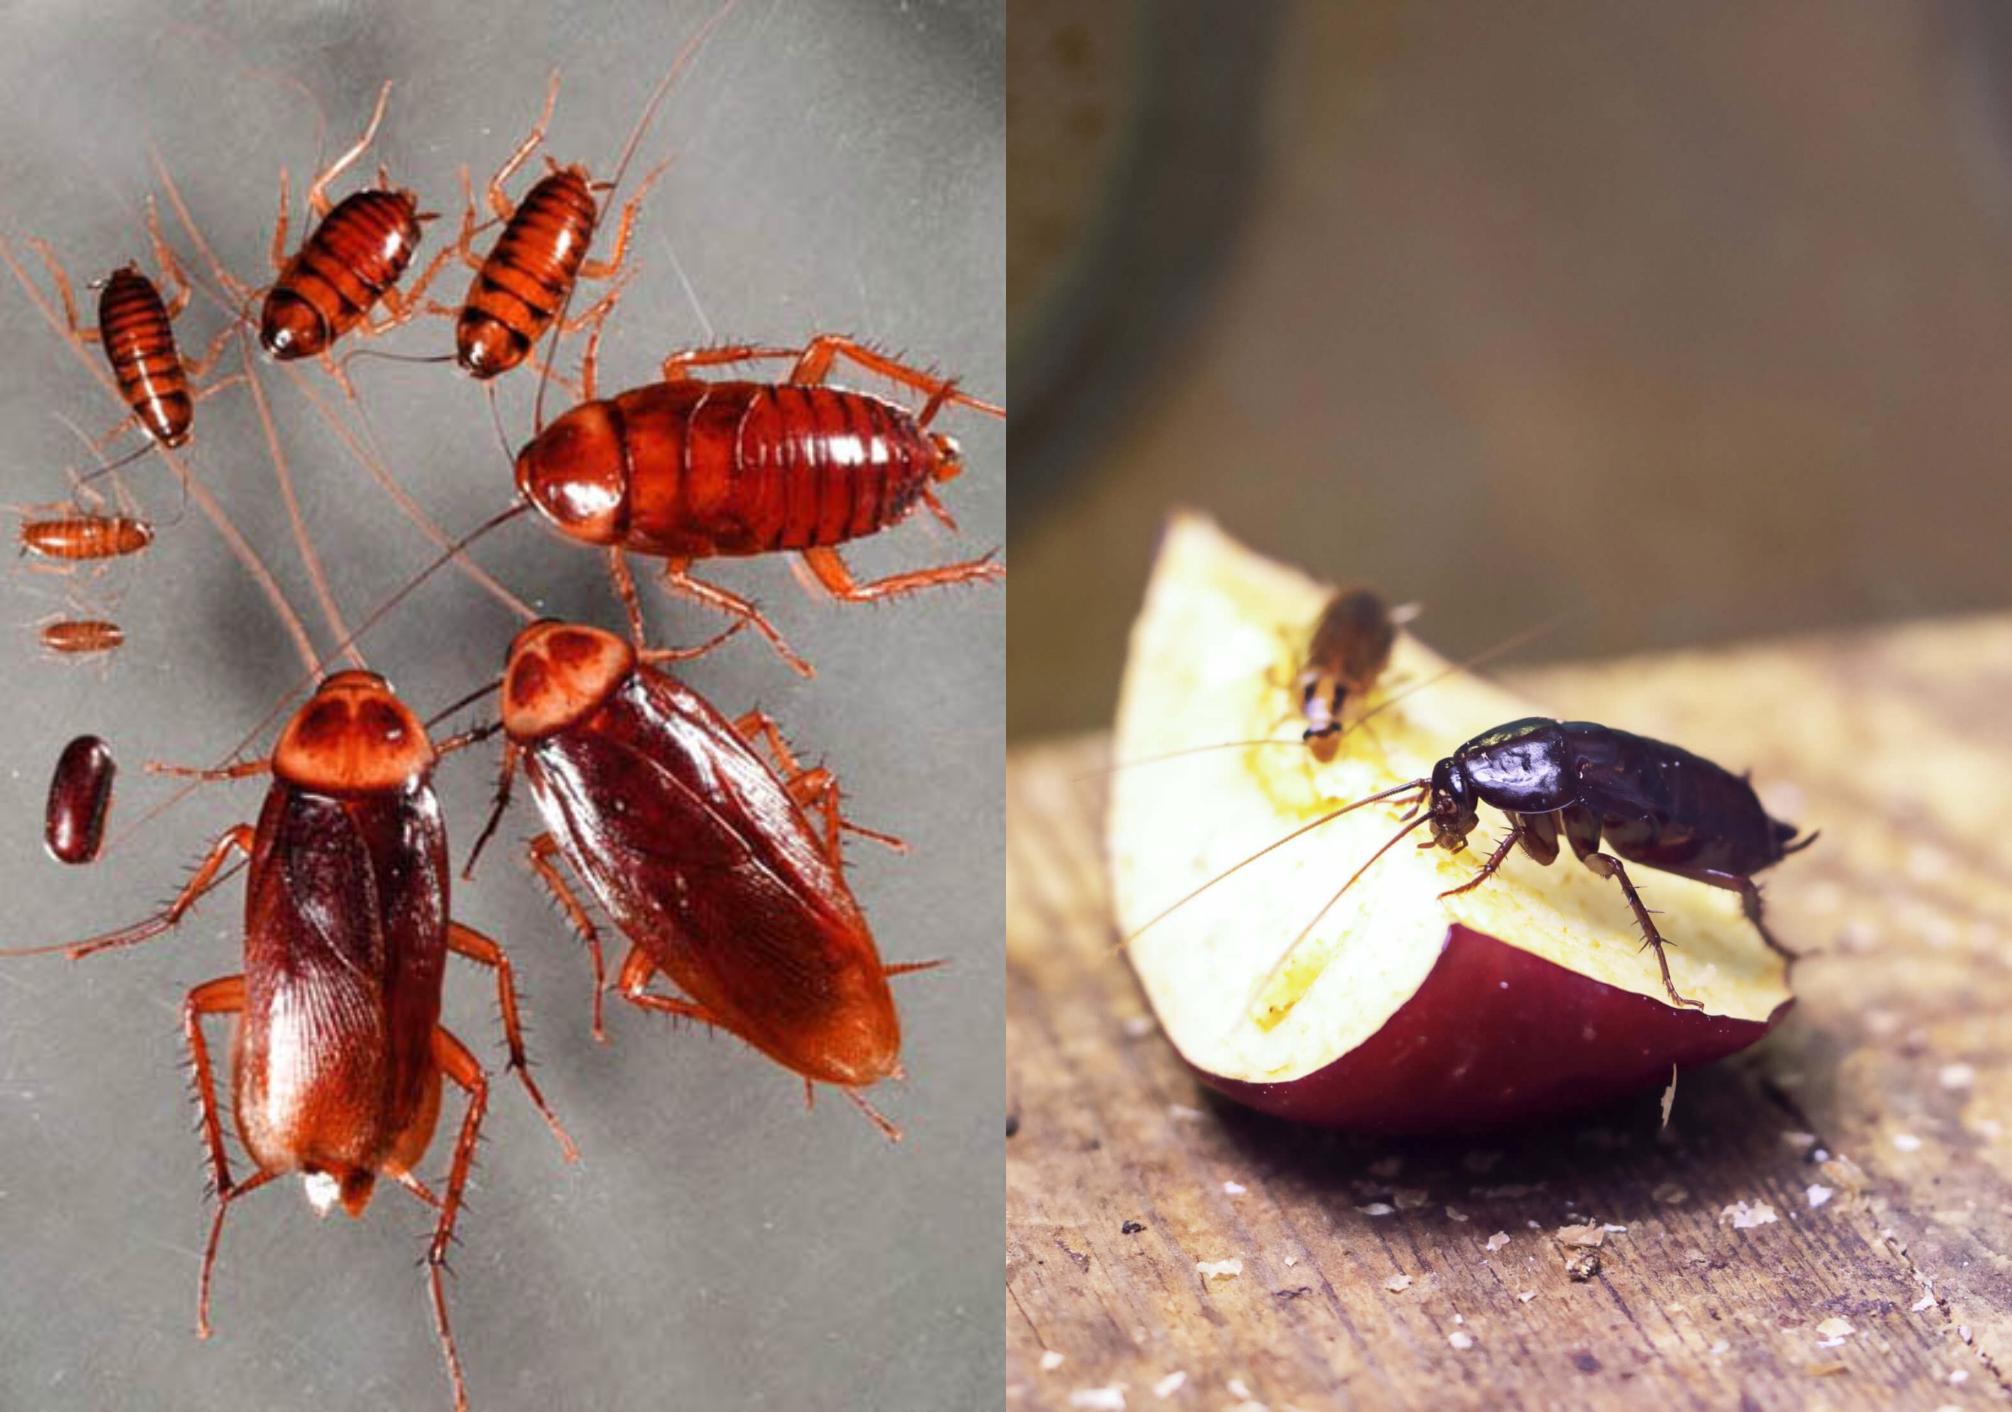 Έντομα που μοιάζουν με κατσαρίδες: Δείτε φωτογραφίες και πως να τα εξολοθρεύσετε